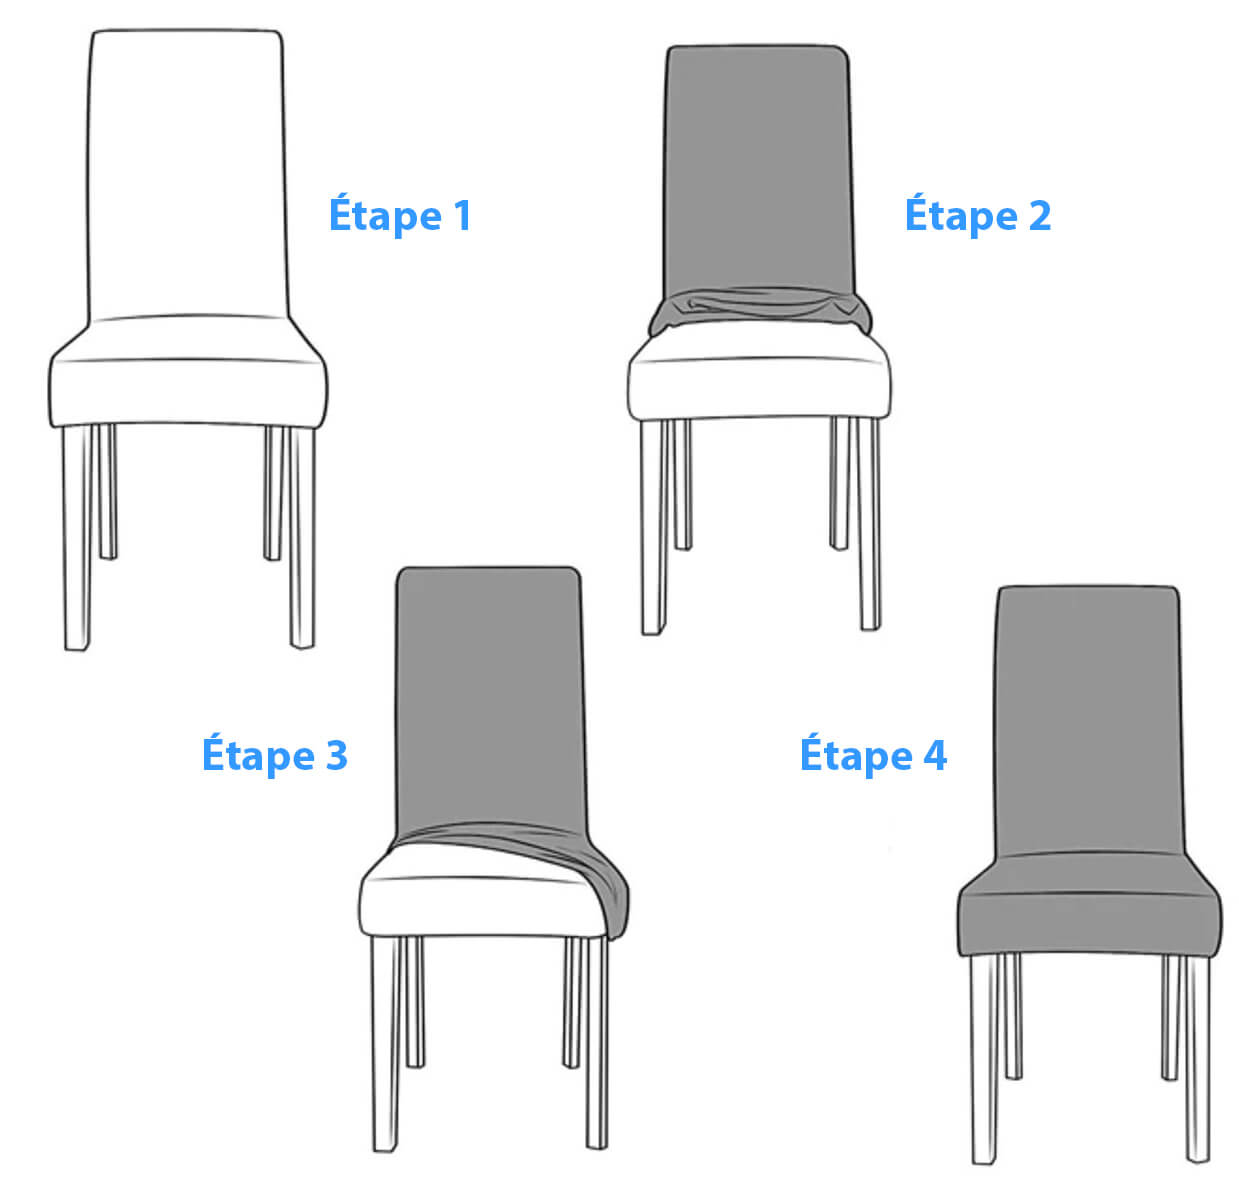 Comment installer ma housse de chaise XL extensible de grande taille ? Instructions par etapes et guide pour l'installation